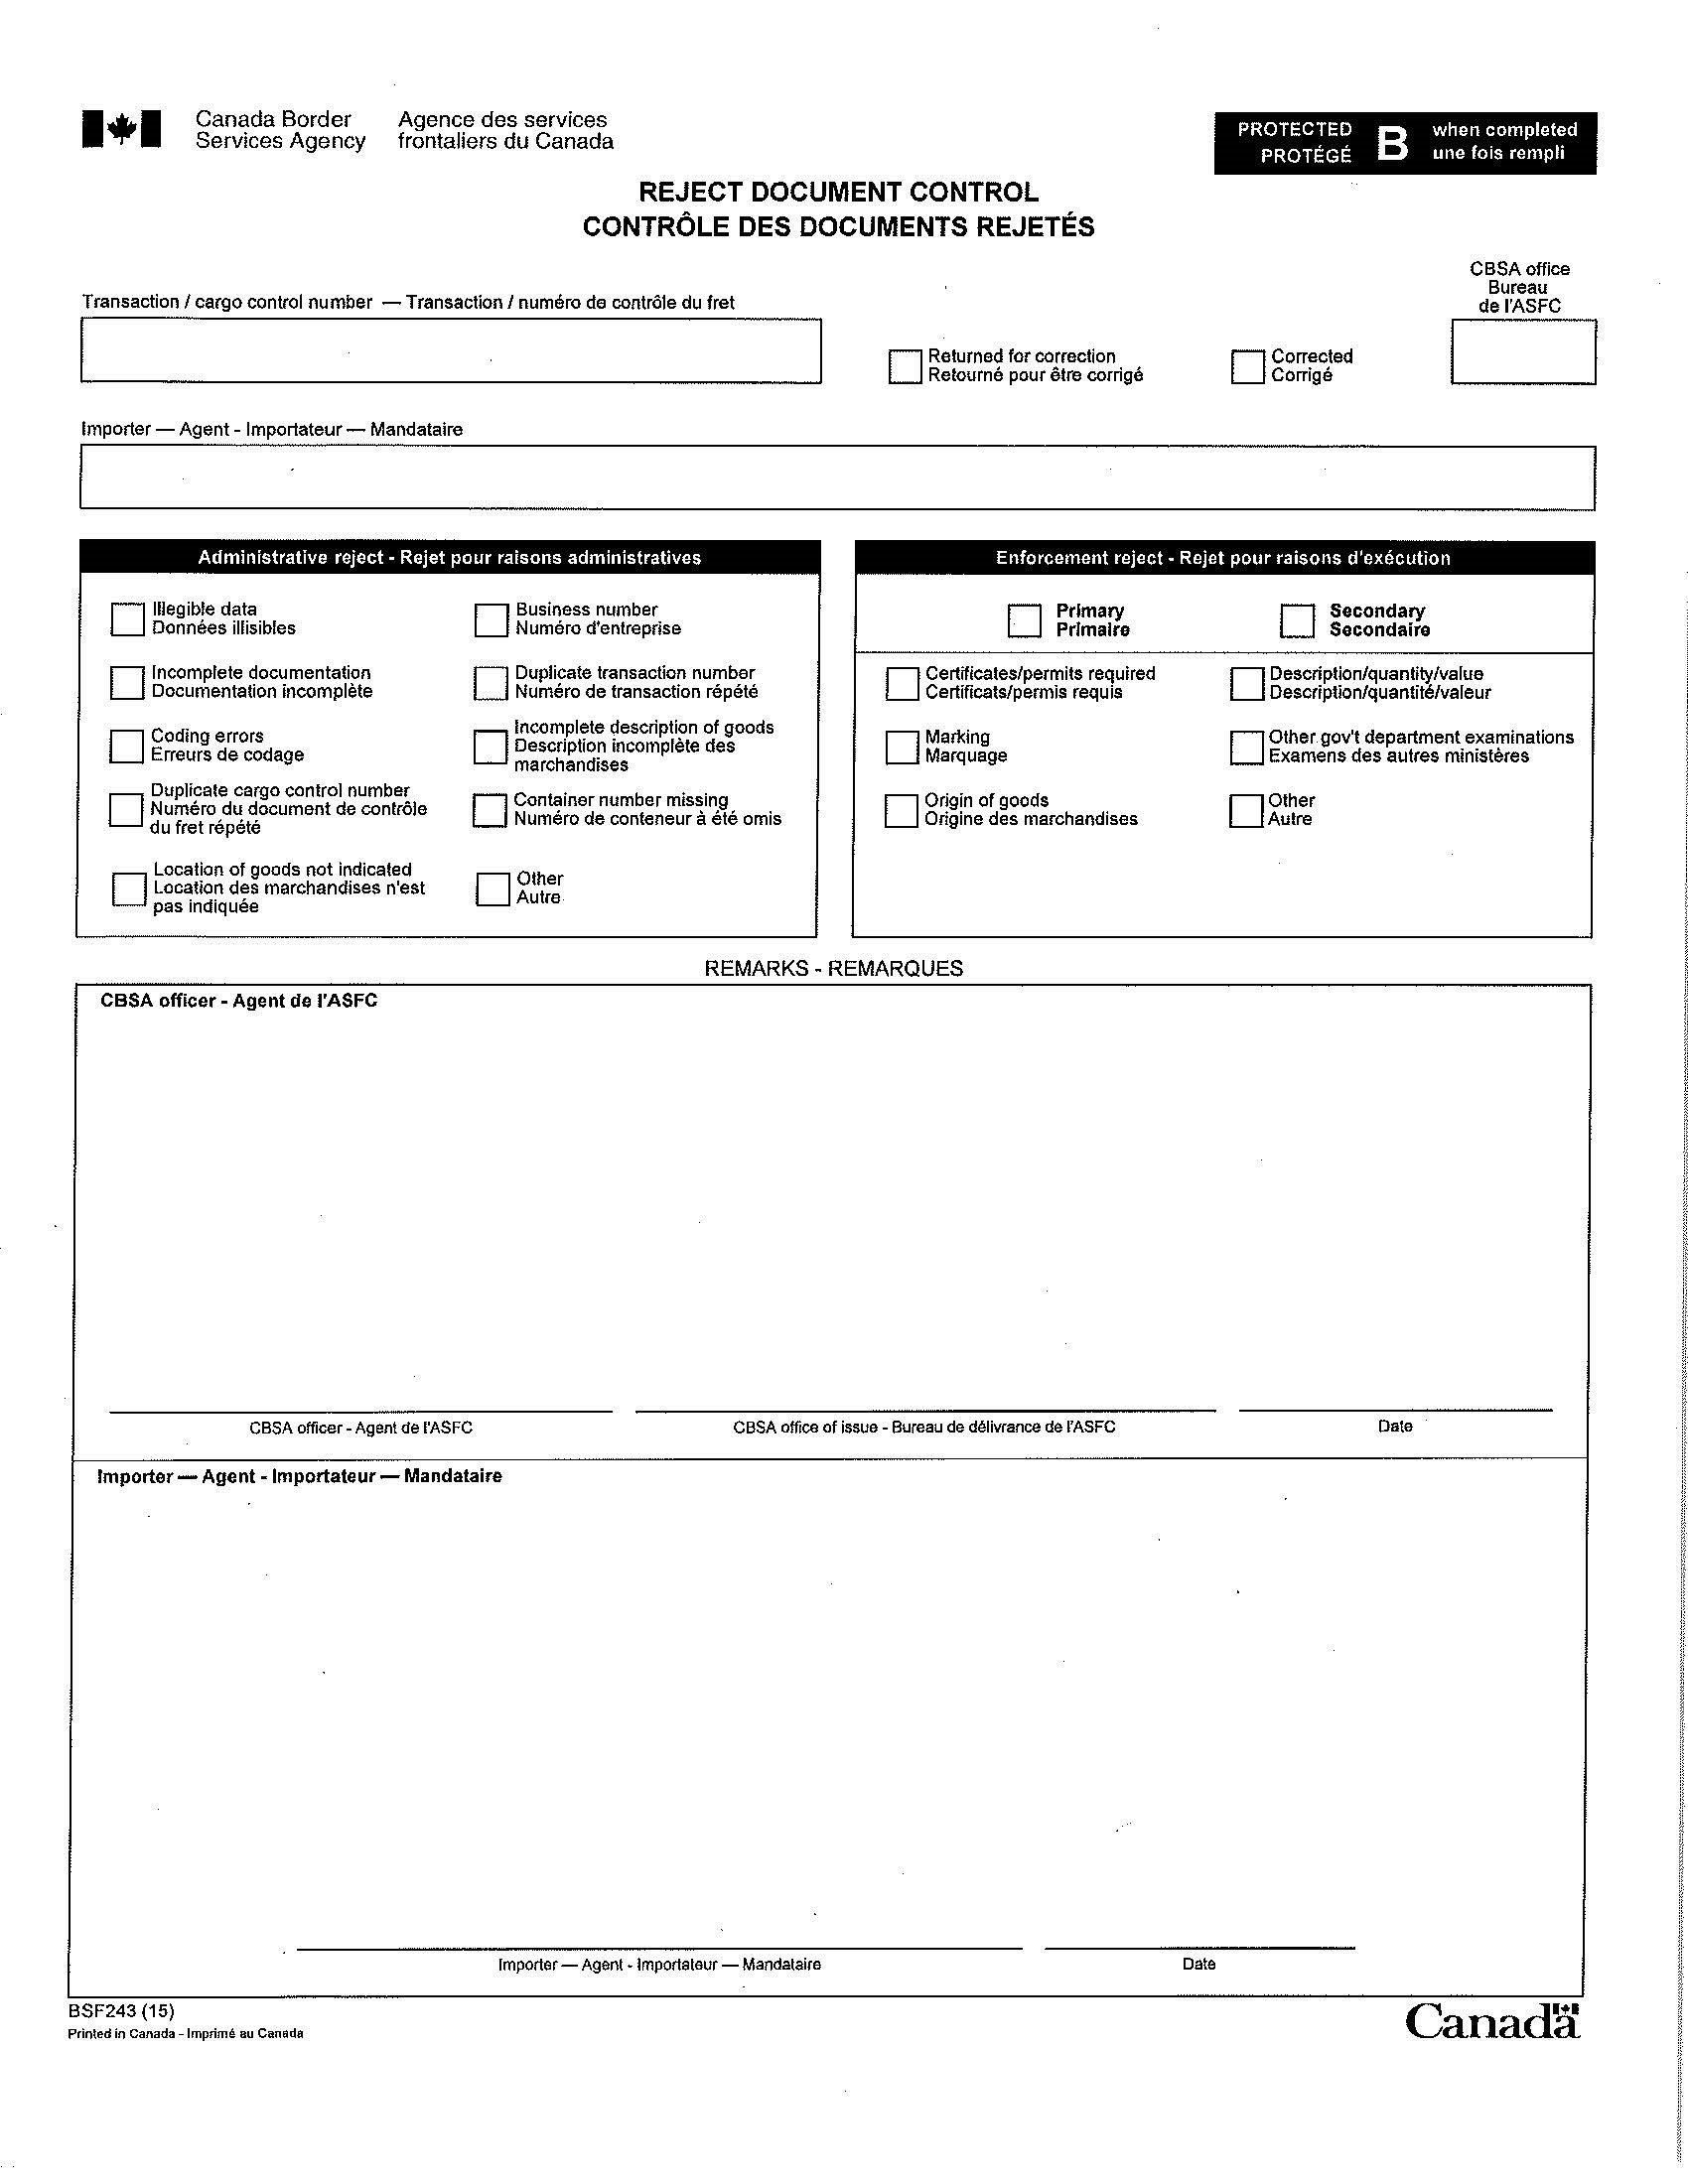 Formulaire BSF243 (Y50), Contrôle des documents rejetés, page 1 de 1